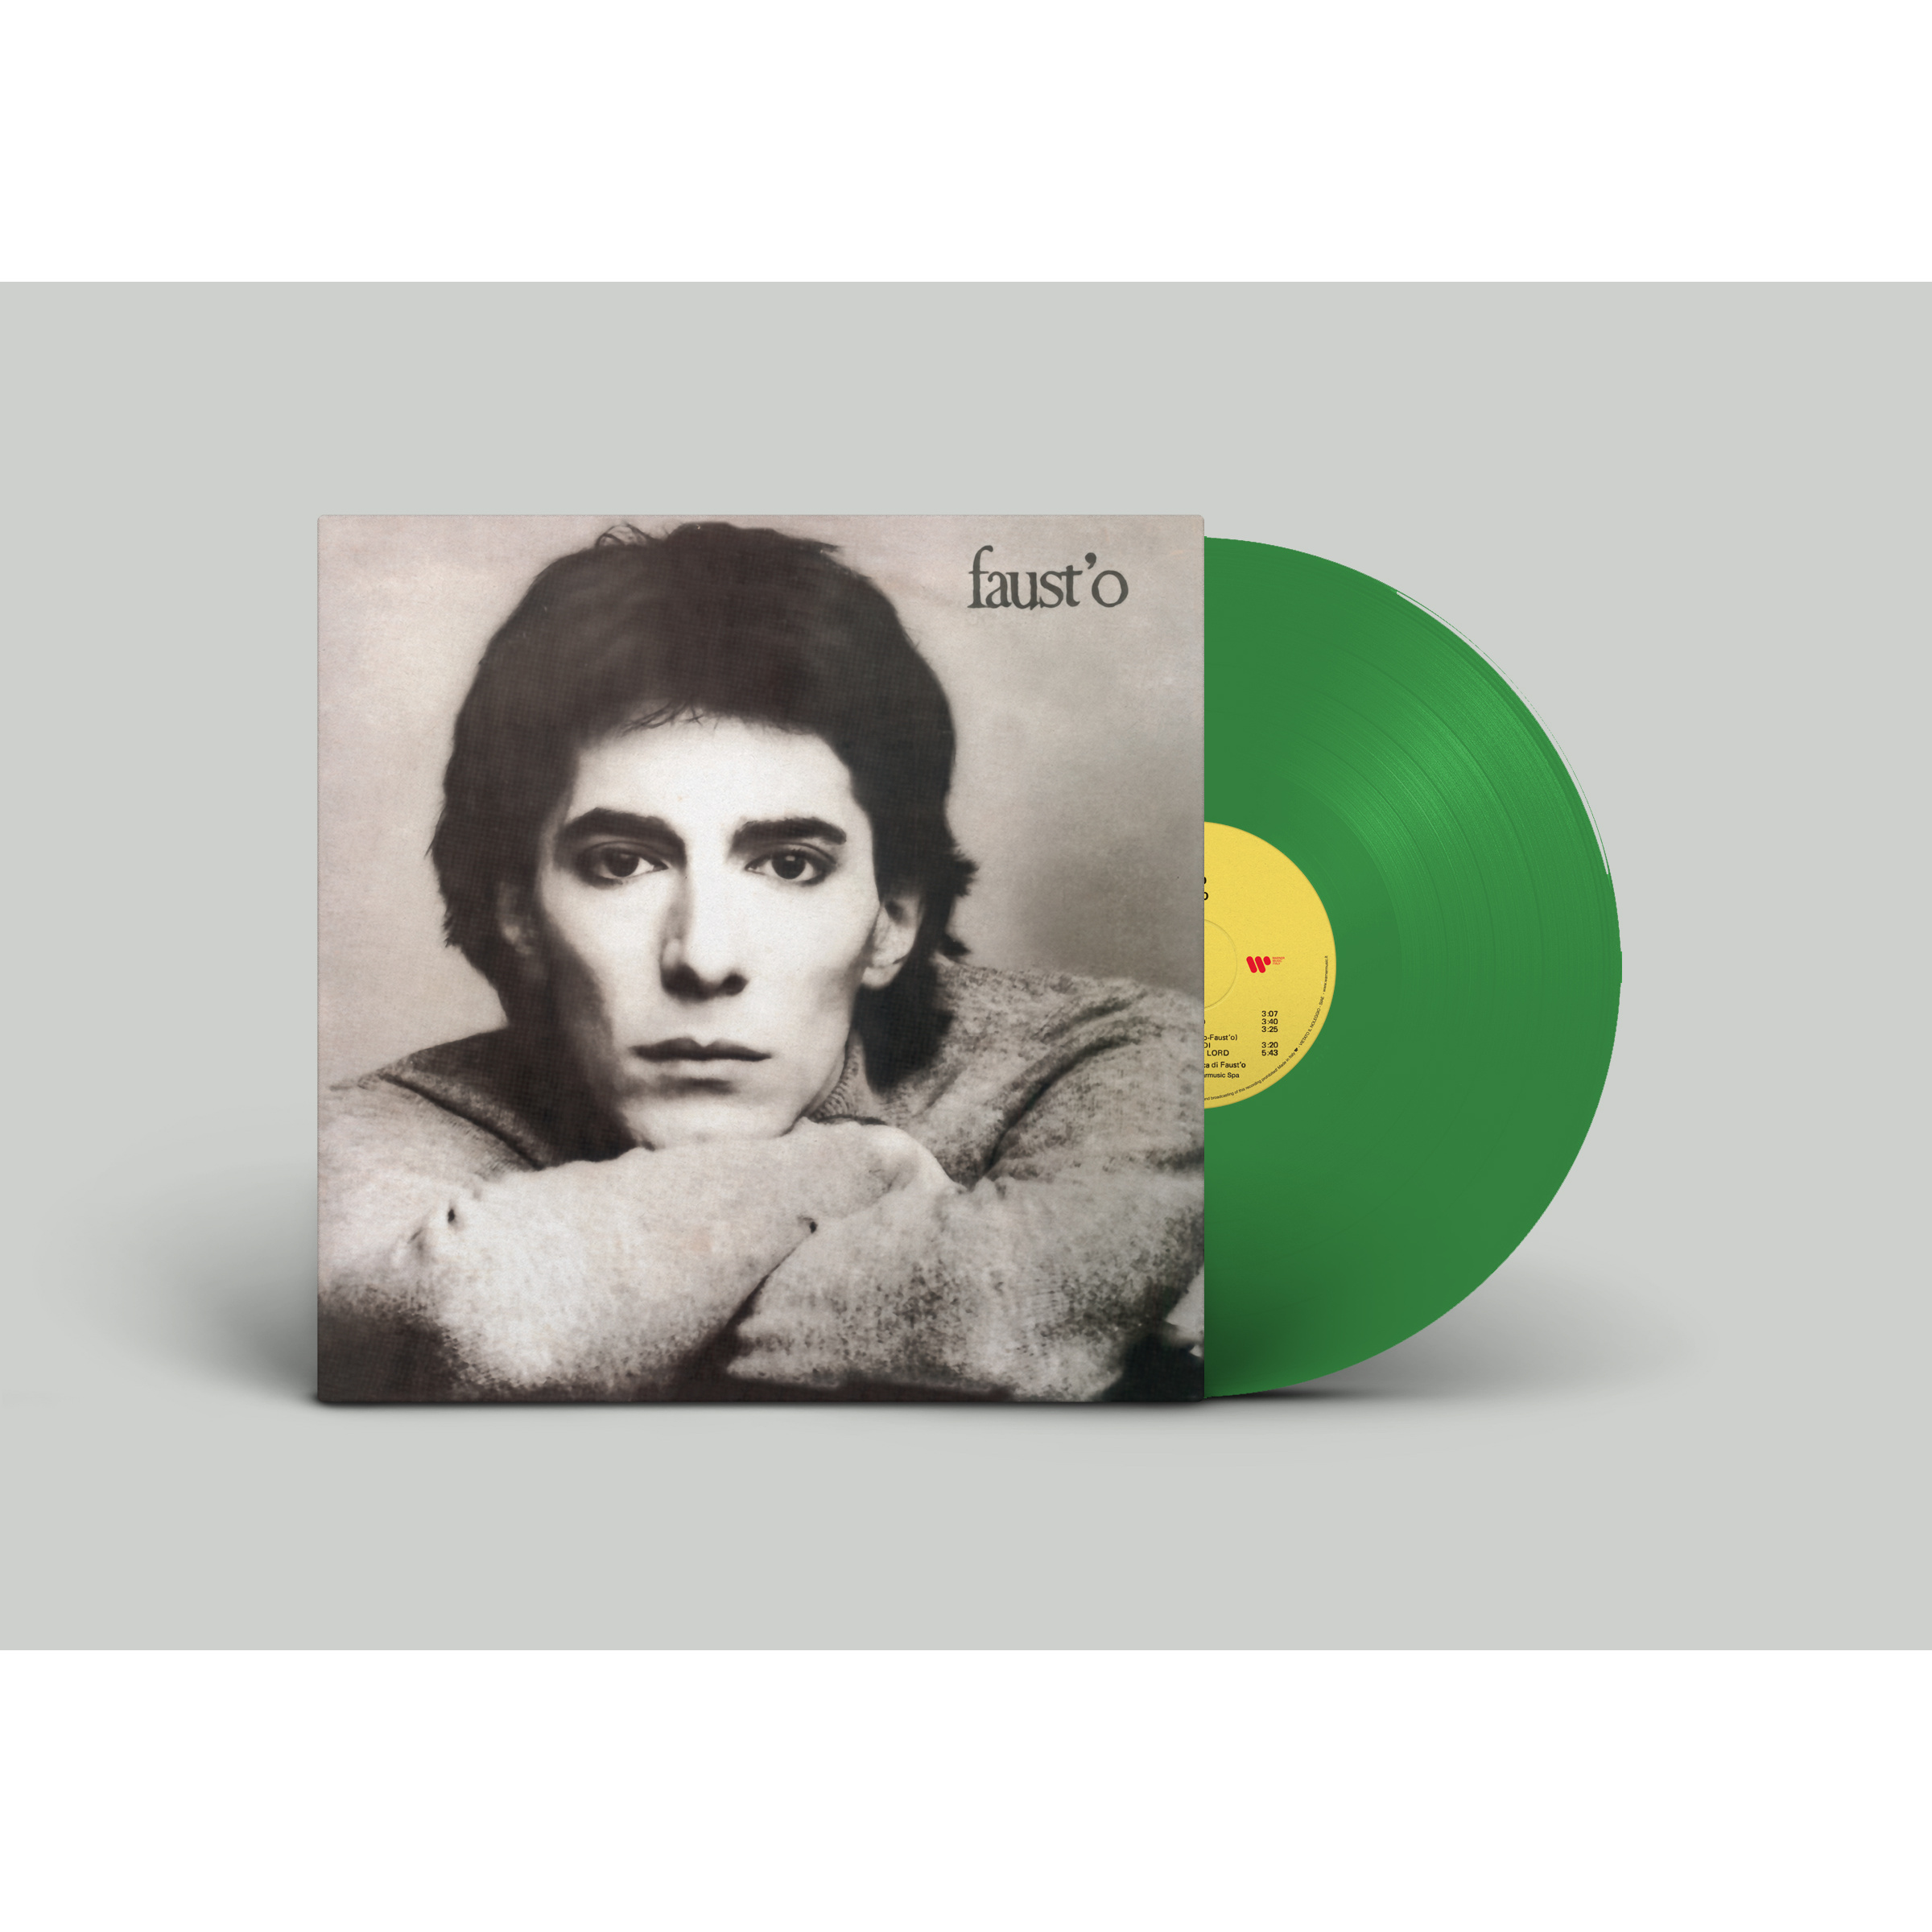 SUICIDIO - LP 180 GR. GREEN VINYL / 500 NUMBERED COPIES LTD. ED.